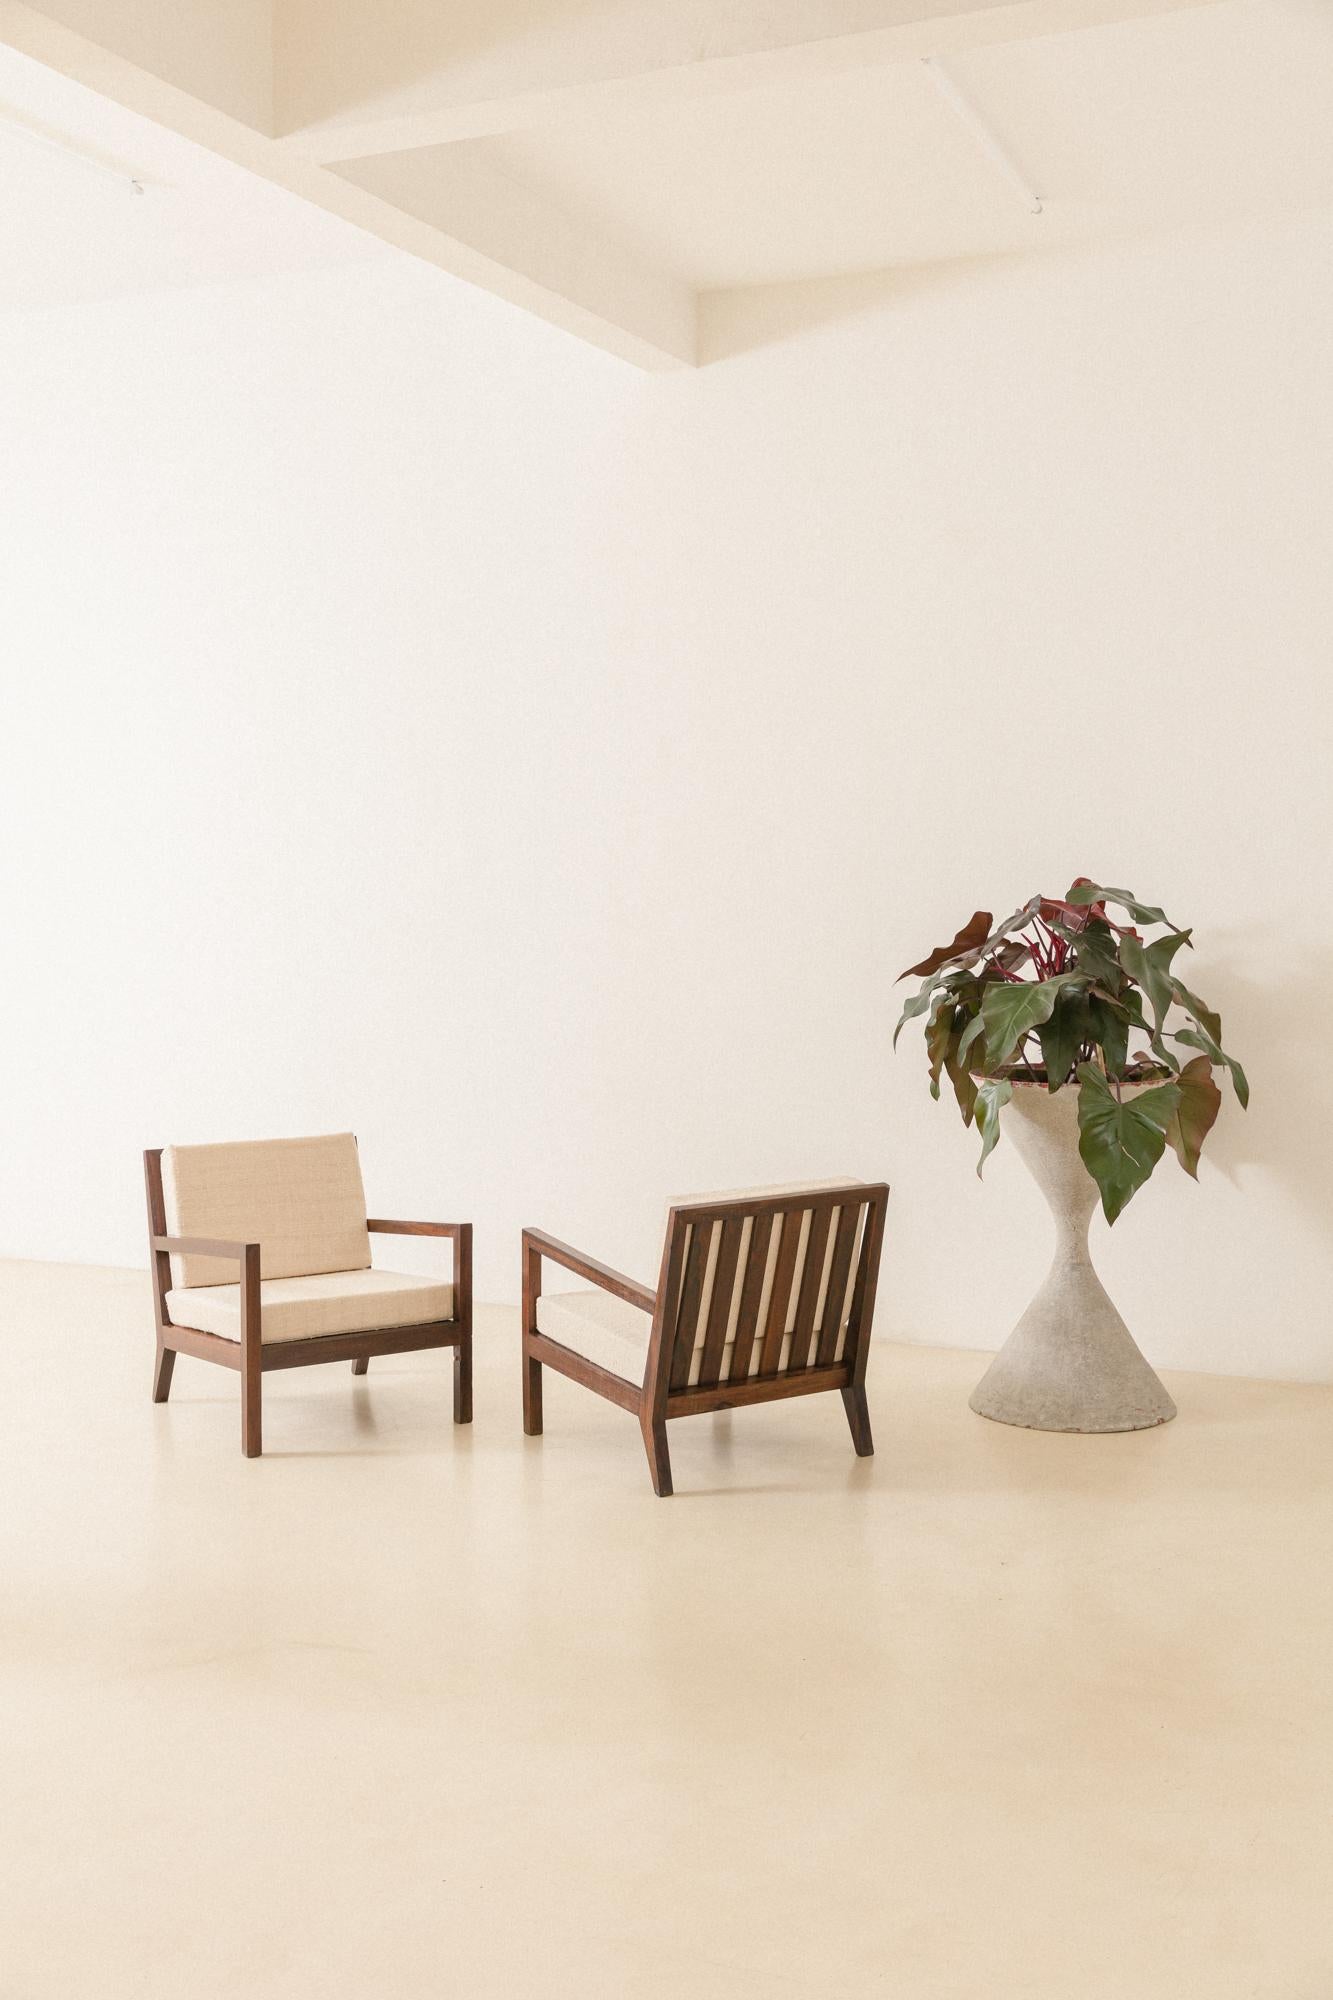 Cette belle paire de fauteuils avec assise et dossier à lattes a été fabriquée dans les années 1960.

Les pièces sont fabriquées en bois de rose brésilien massif. Les fauteuils ont un design rectangulaire avec des dossiers composés de lattes